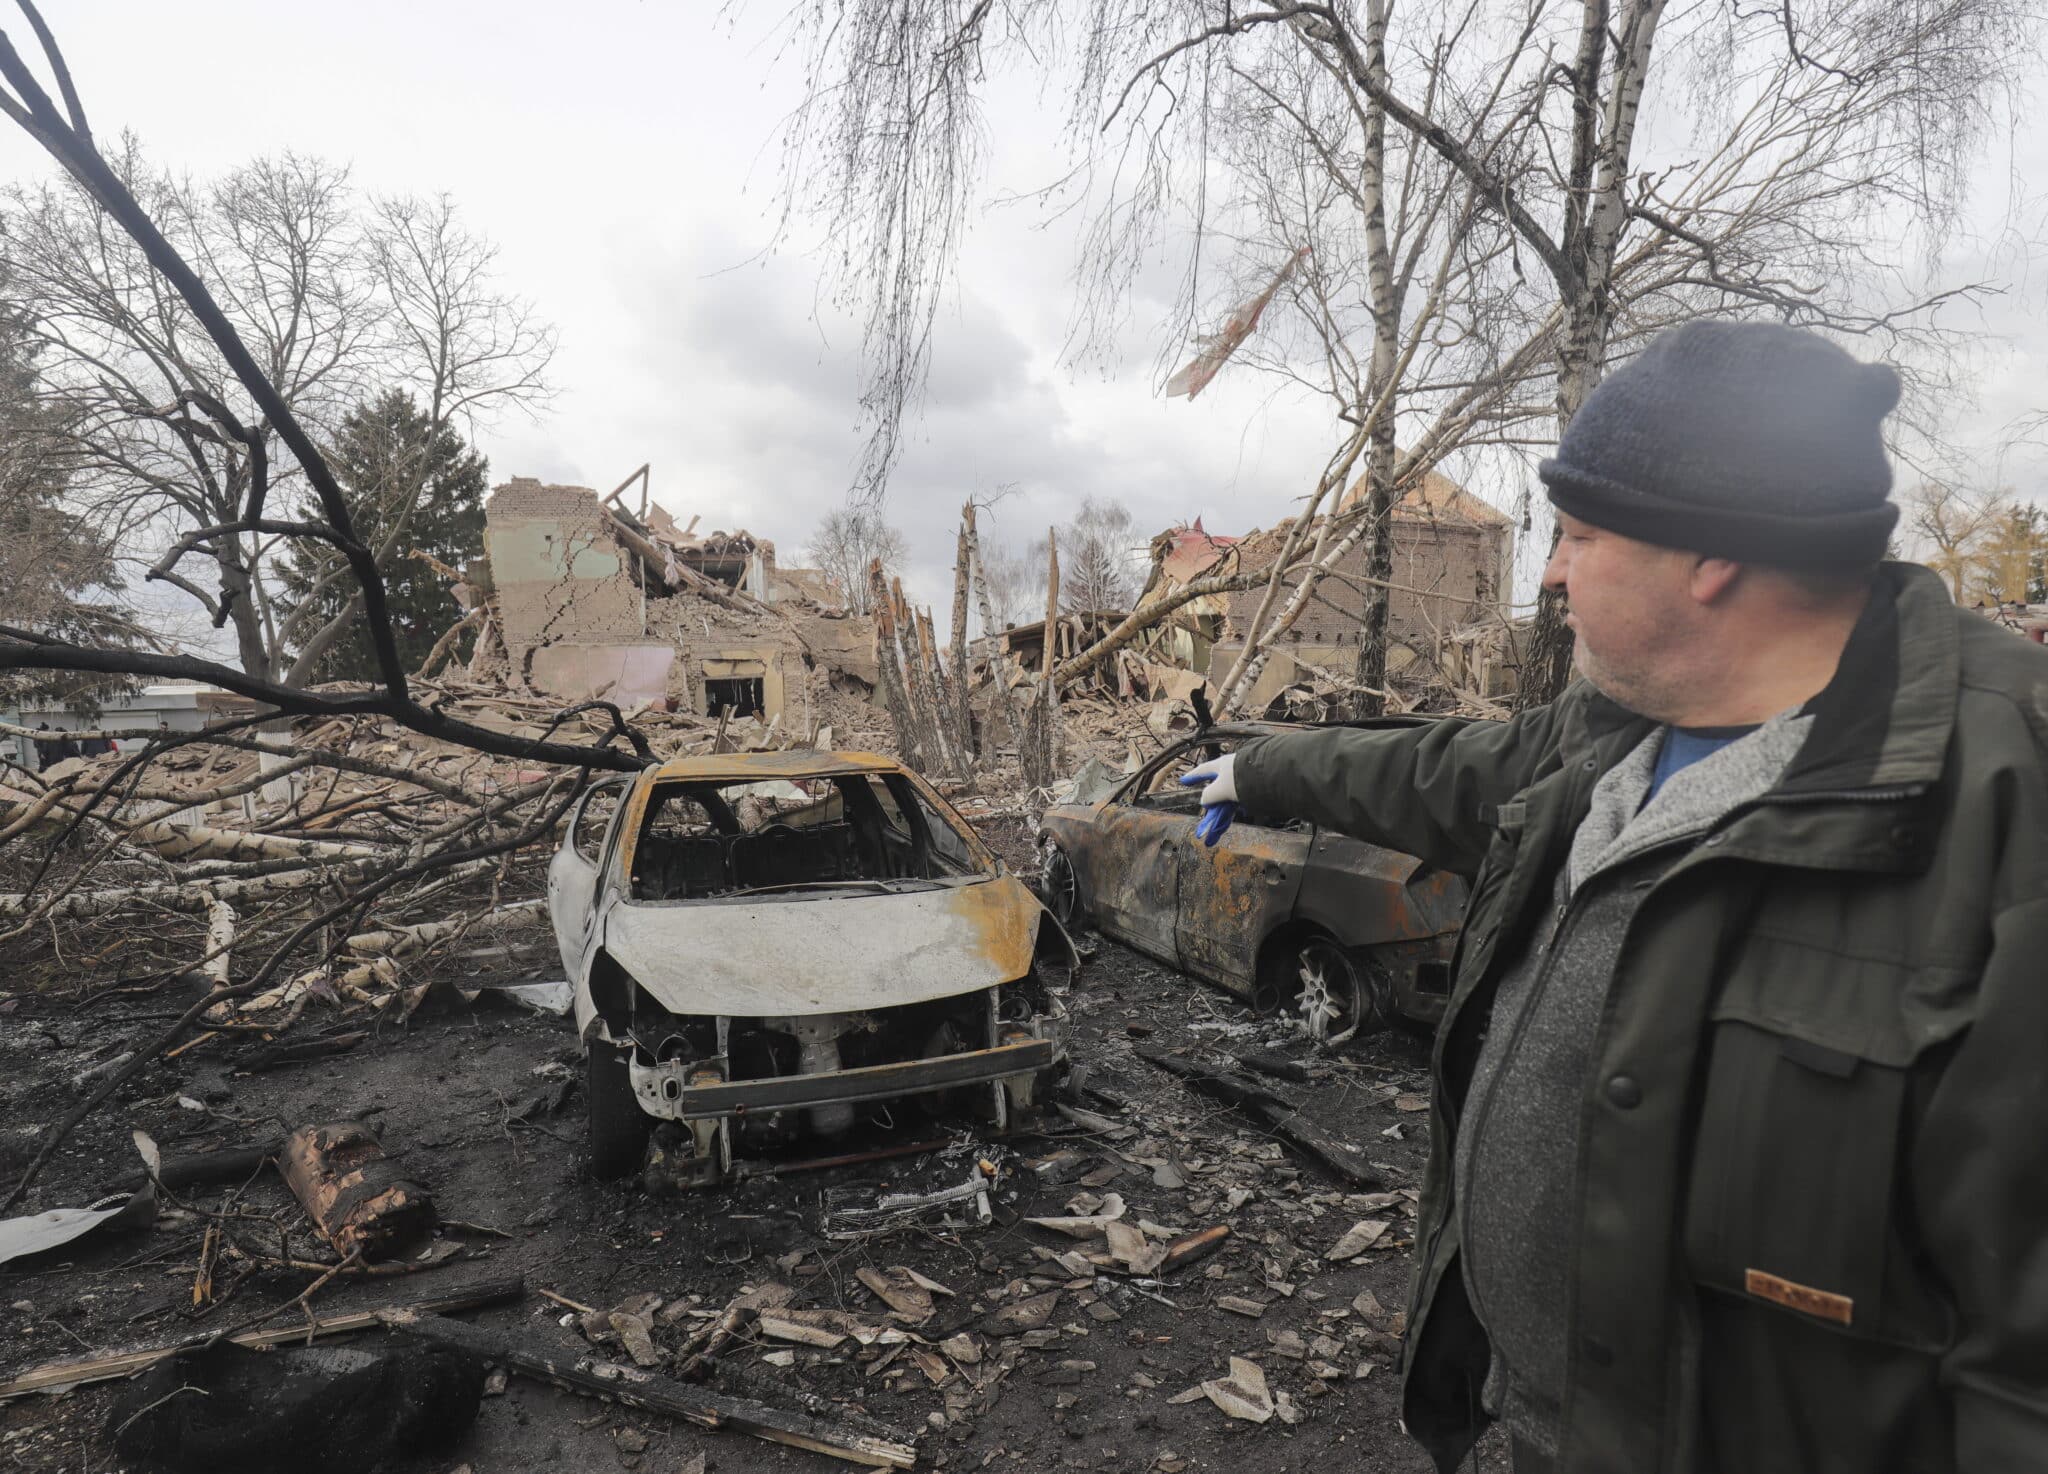 Ucrania asegura que las tropas rusas "están desmoralizadas" y sufren "grandes pérdidas"